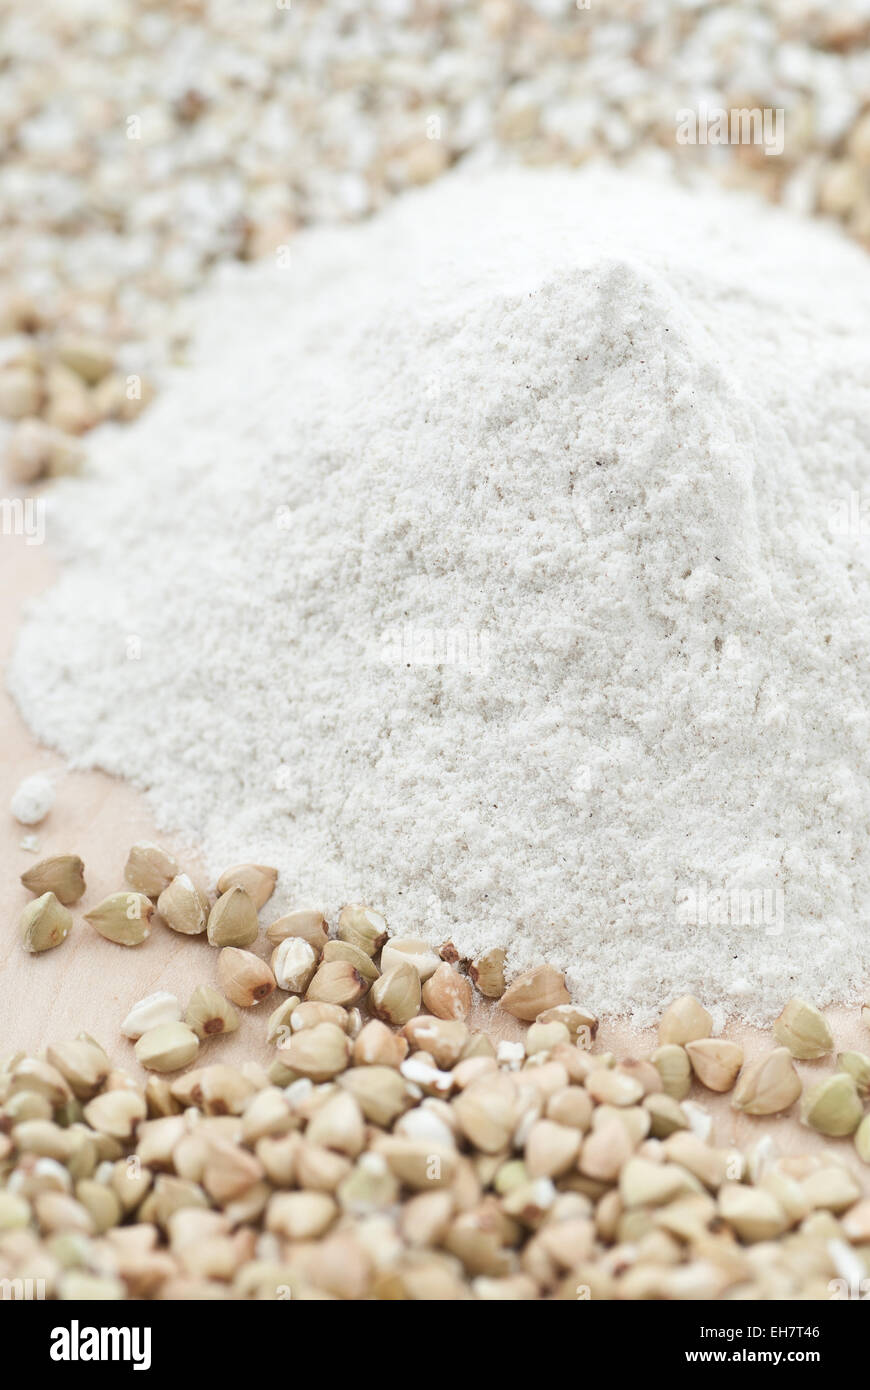 Gluten free buckwheat flour. Stock Photo